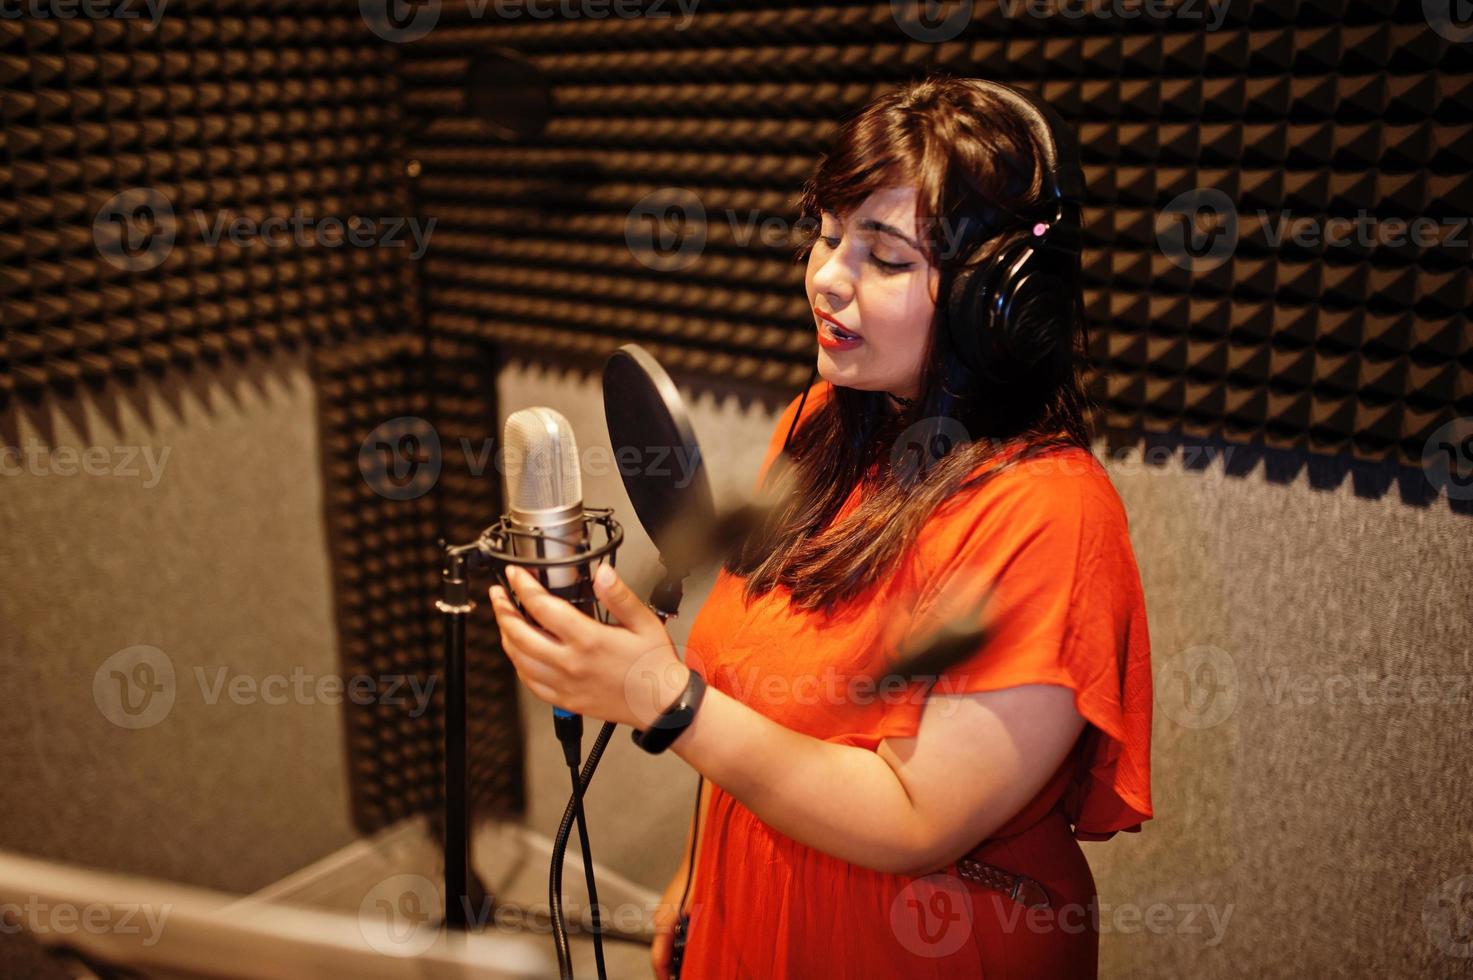 jeune chanteuse asiatique avec microphone enregistrant une chanson dans un studio de musique d'enregistrement. photo